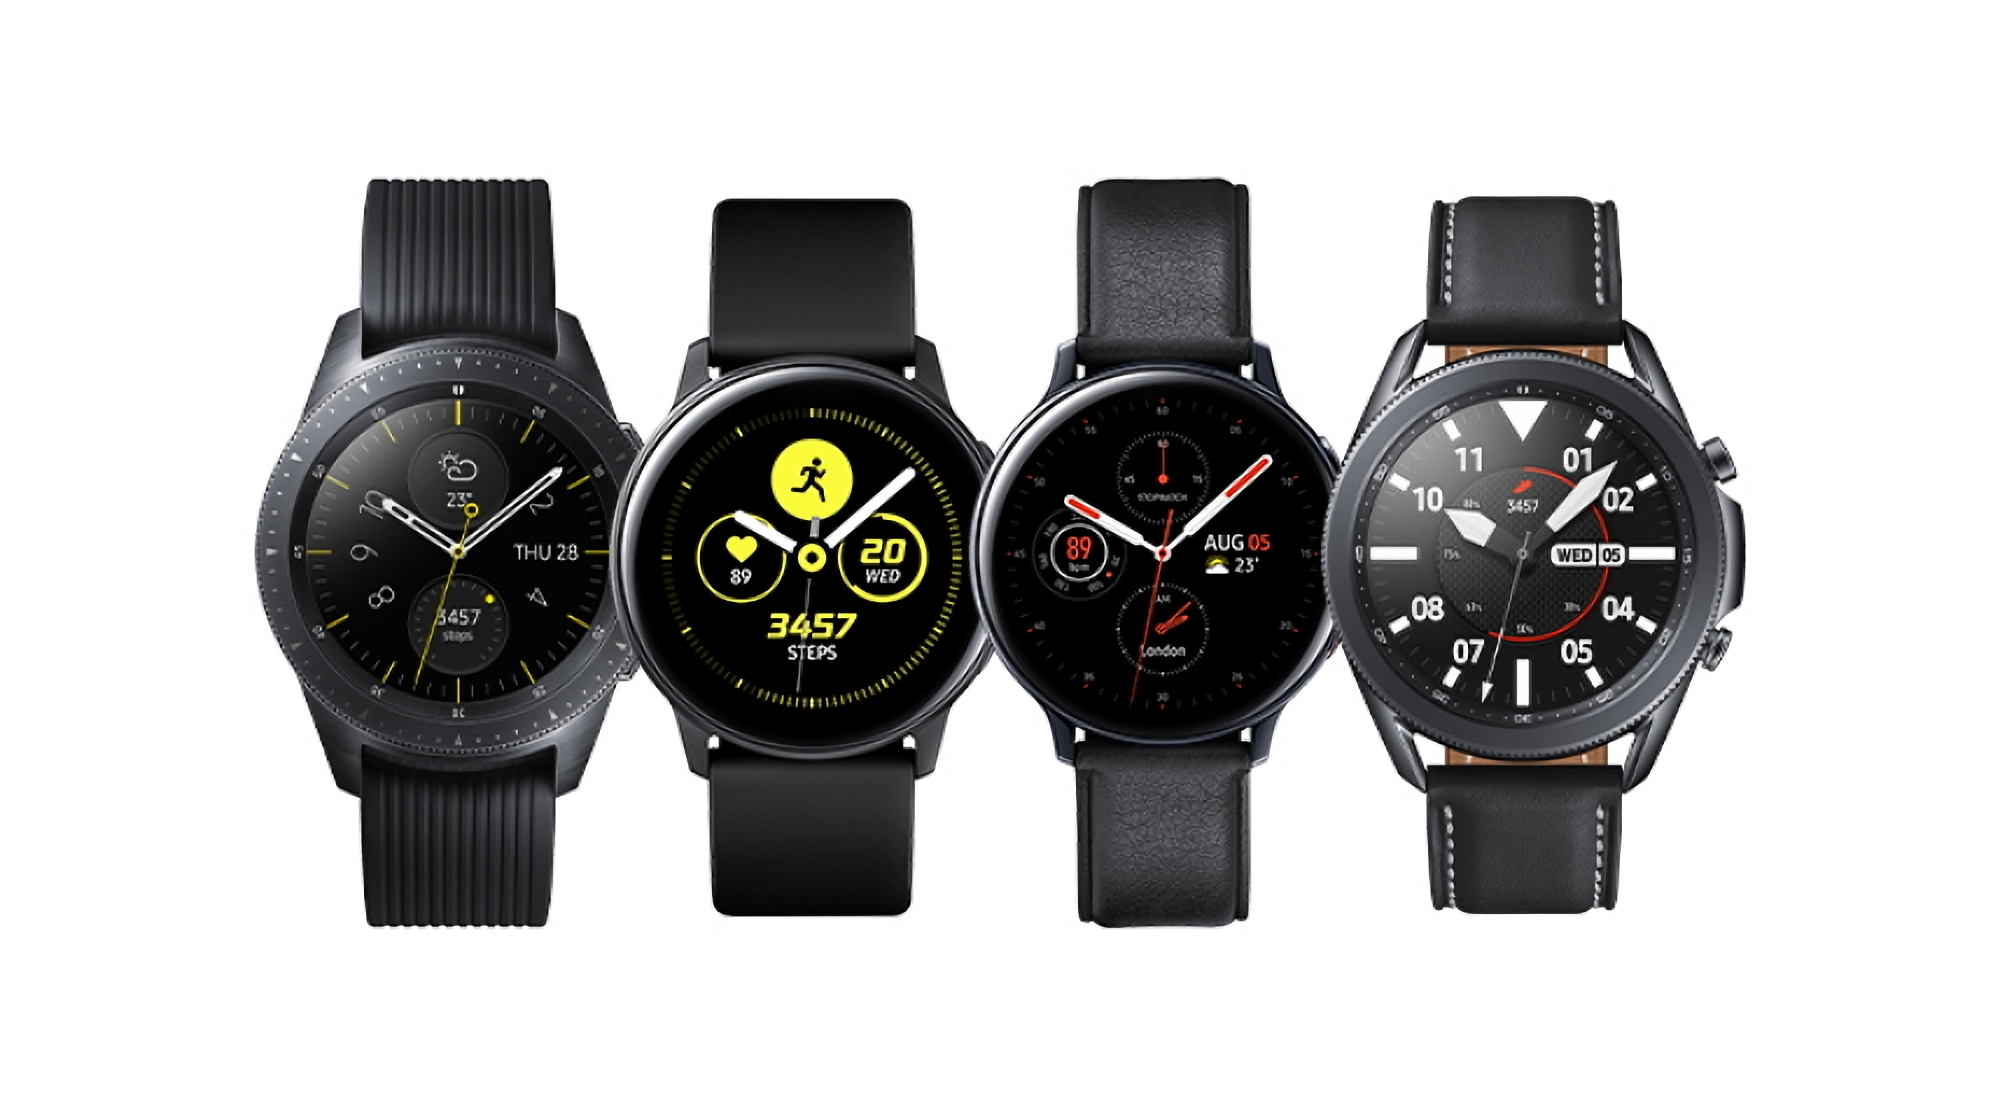 Оригінальні смарт-годинники Samsung Galaxy Watch і Galaxy Watch Active почали отримувати наступне оновлення ПЗ